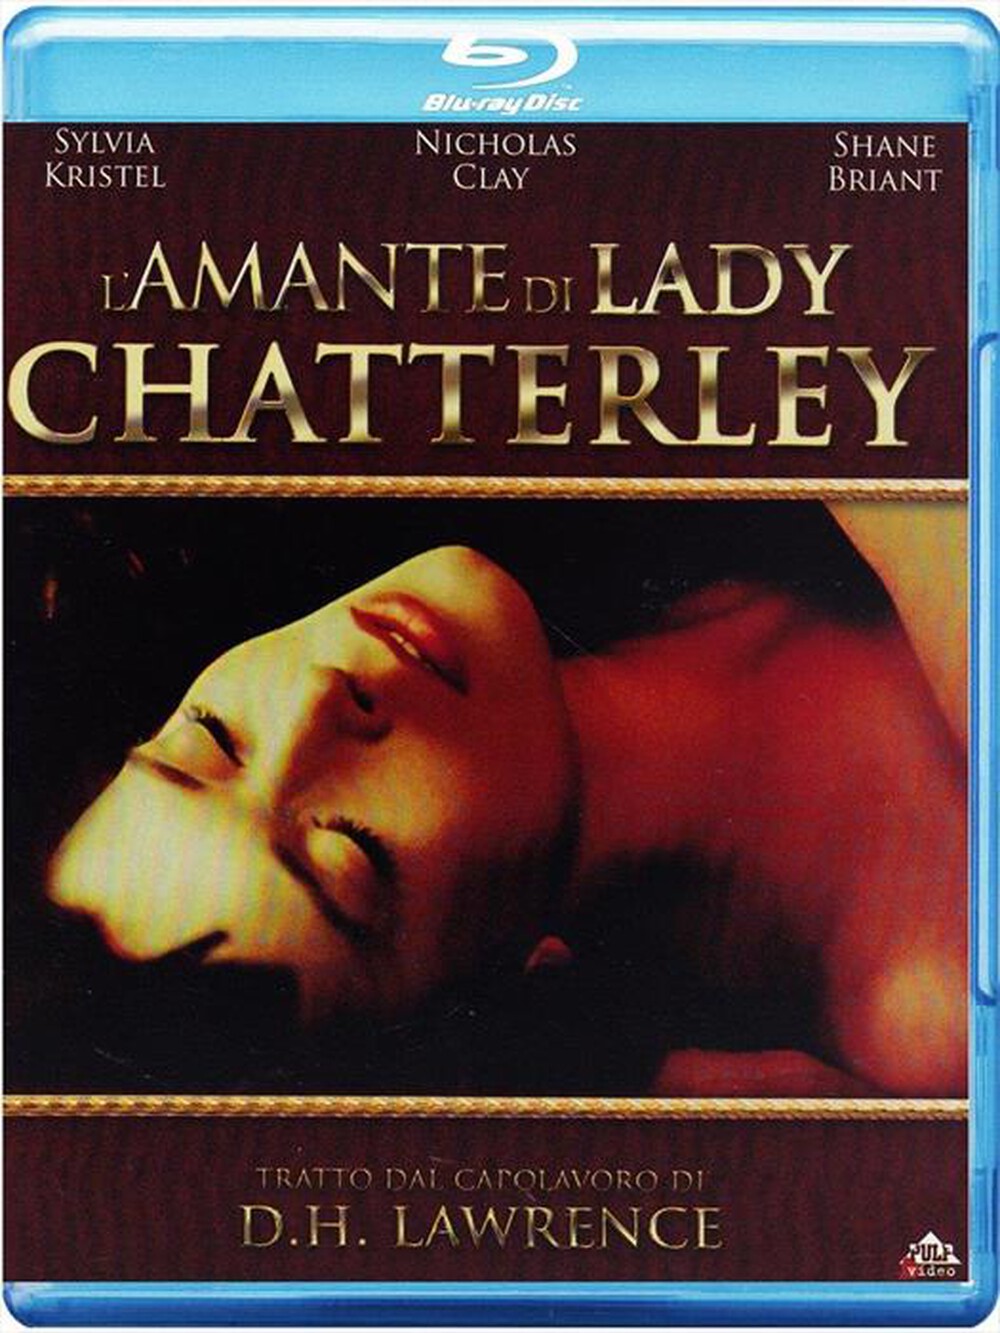 "CECCHI GORI - Amante Di Lady Chatterly (L')"